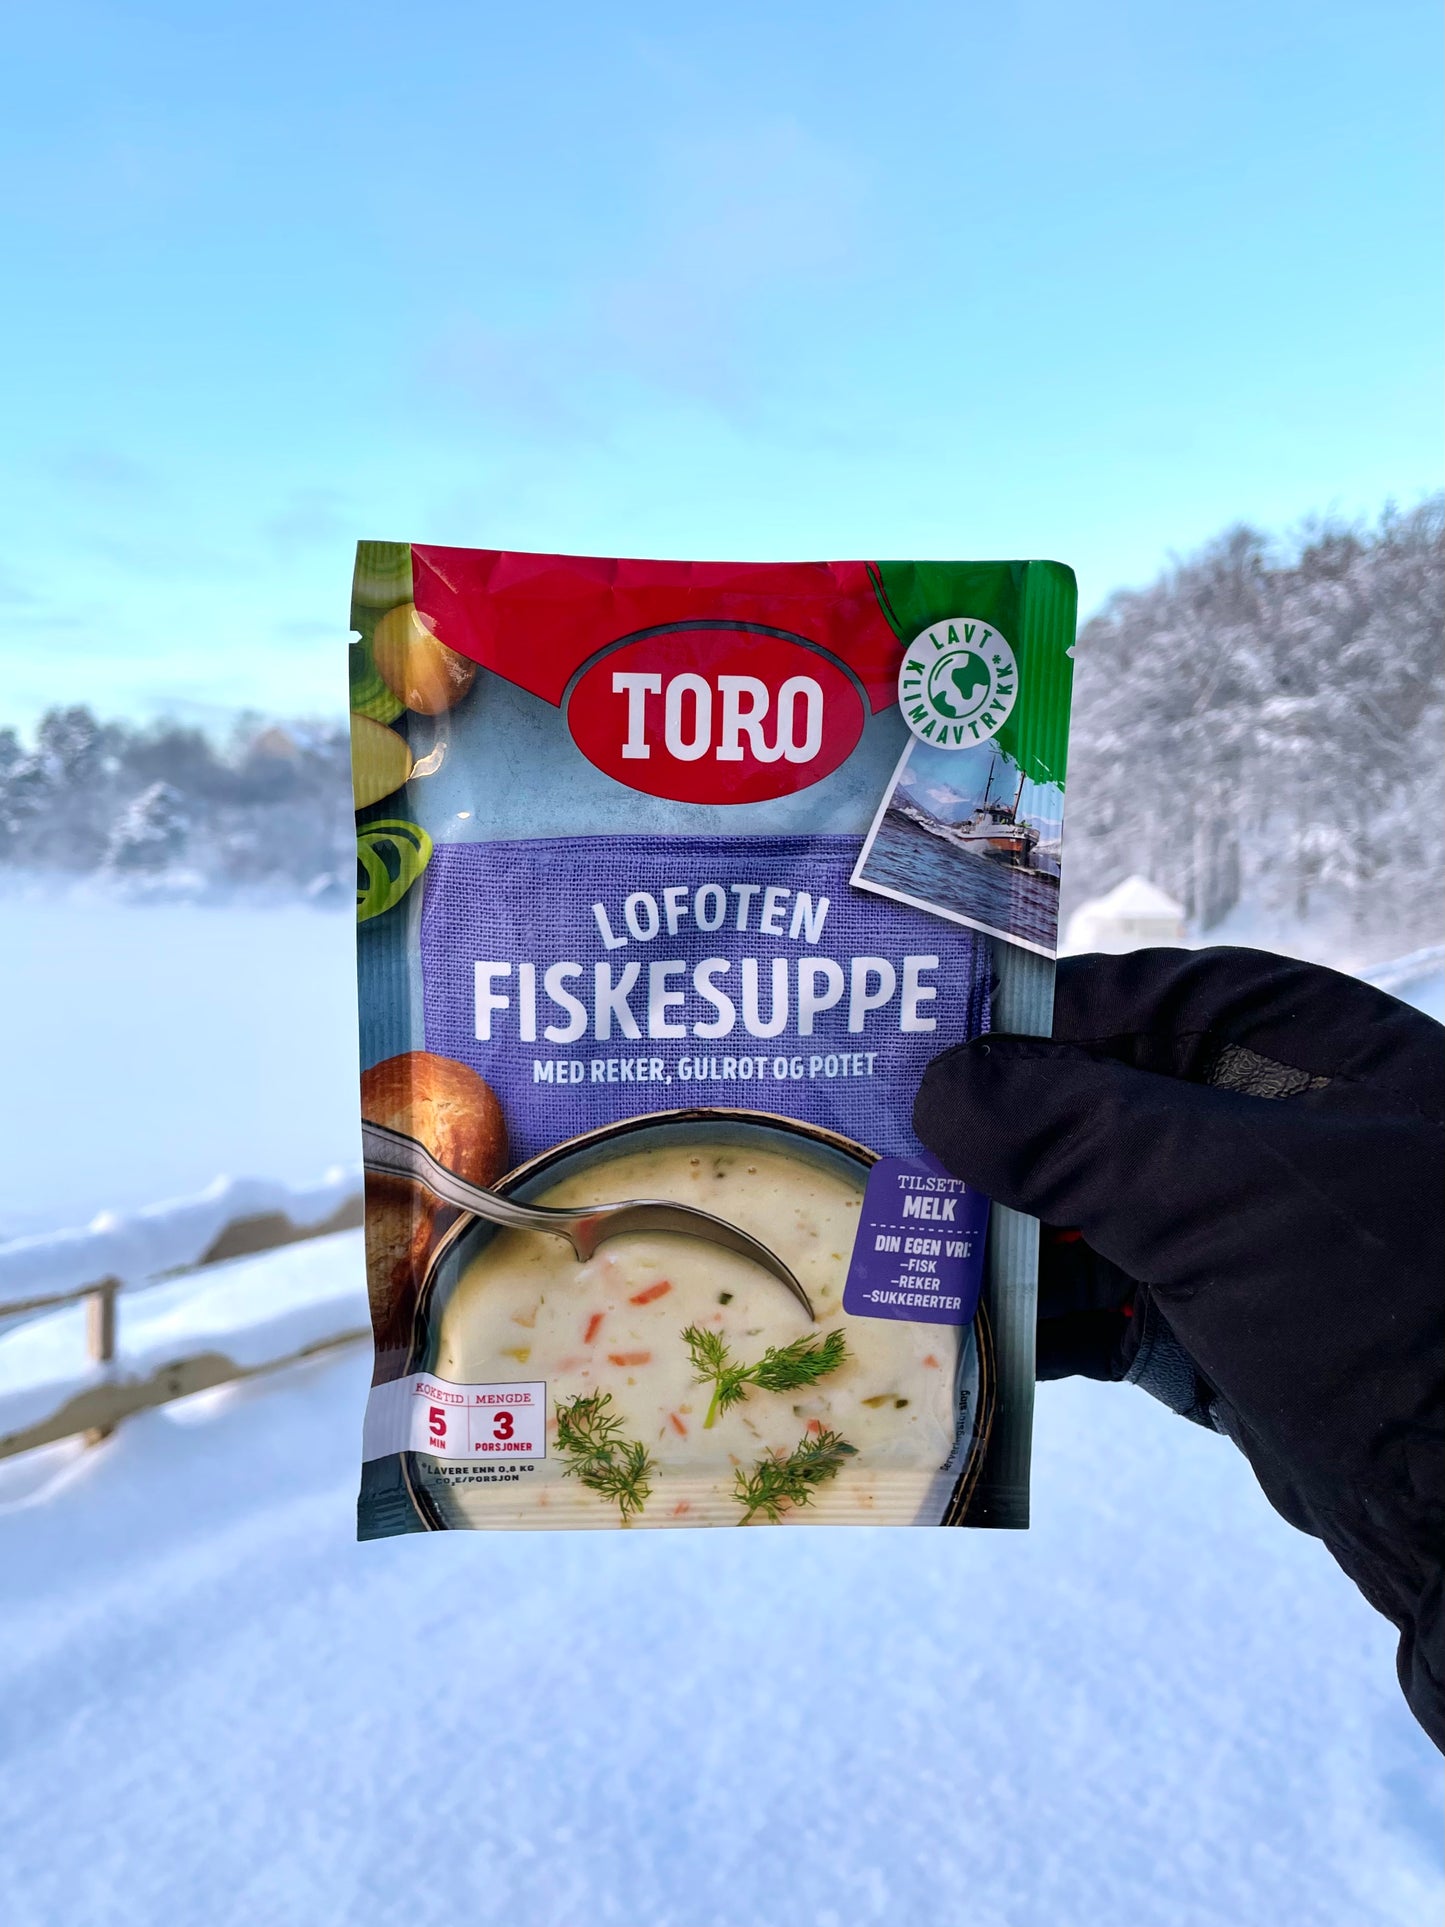 Toro Lofoten Fiskesuppe - Lofoten Fish Soup 70 grams (2.5 oz)